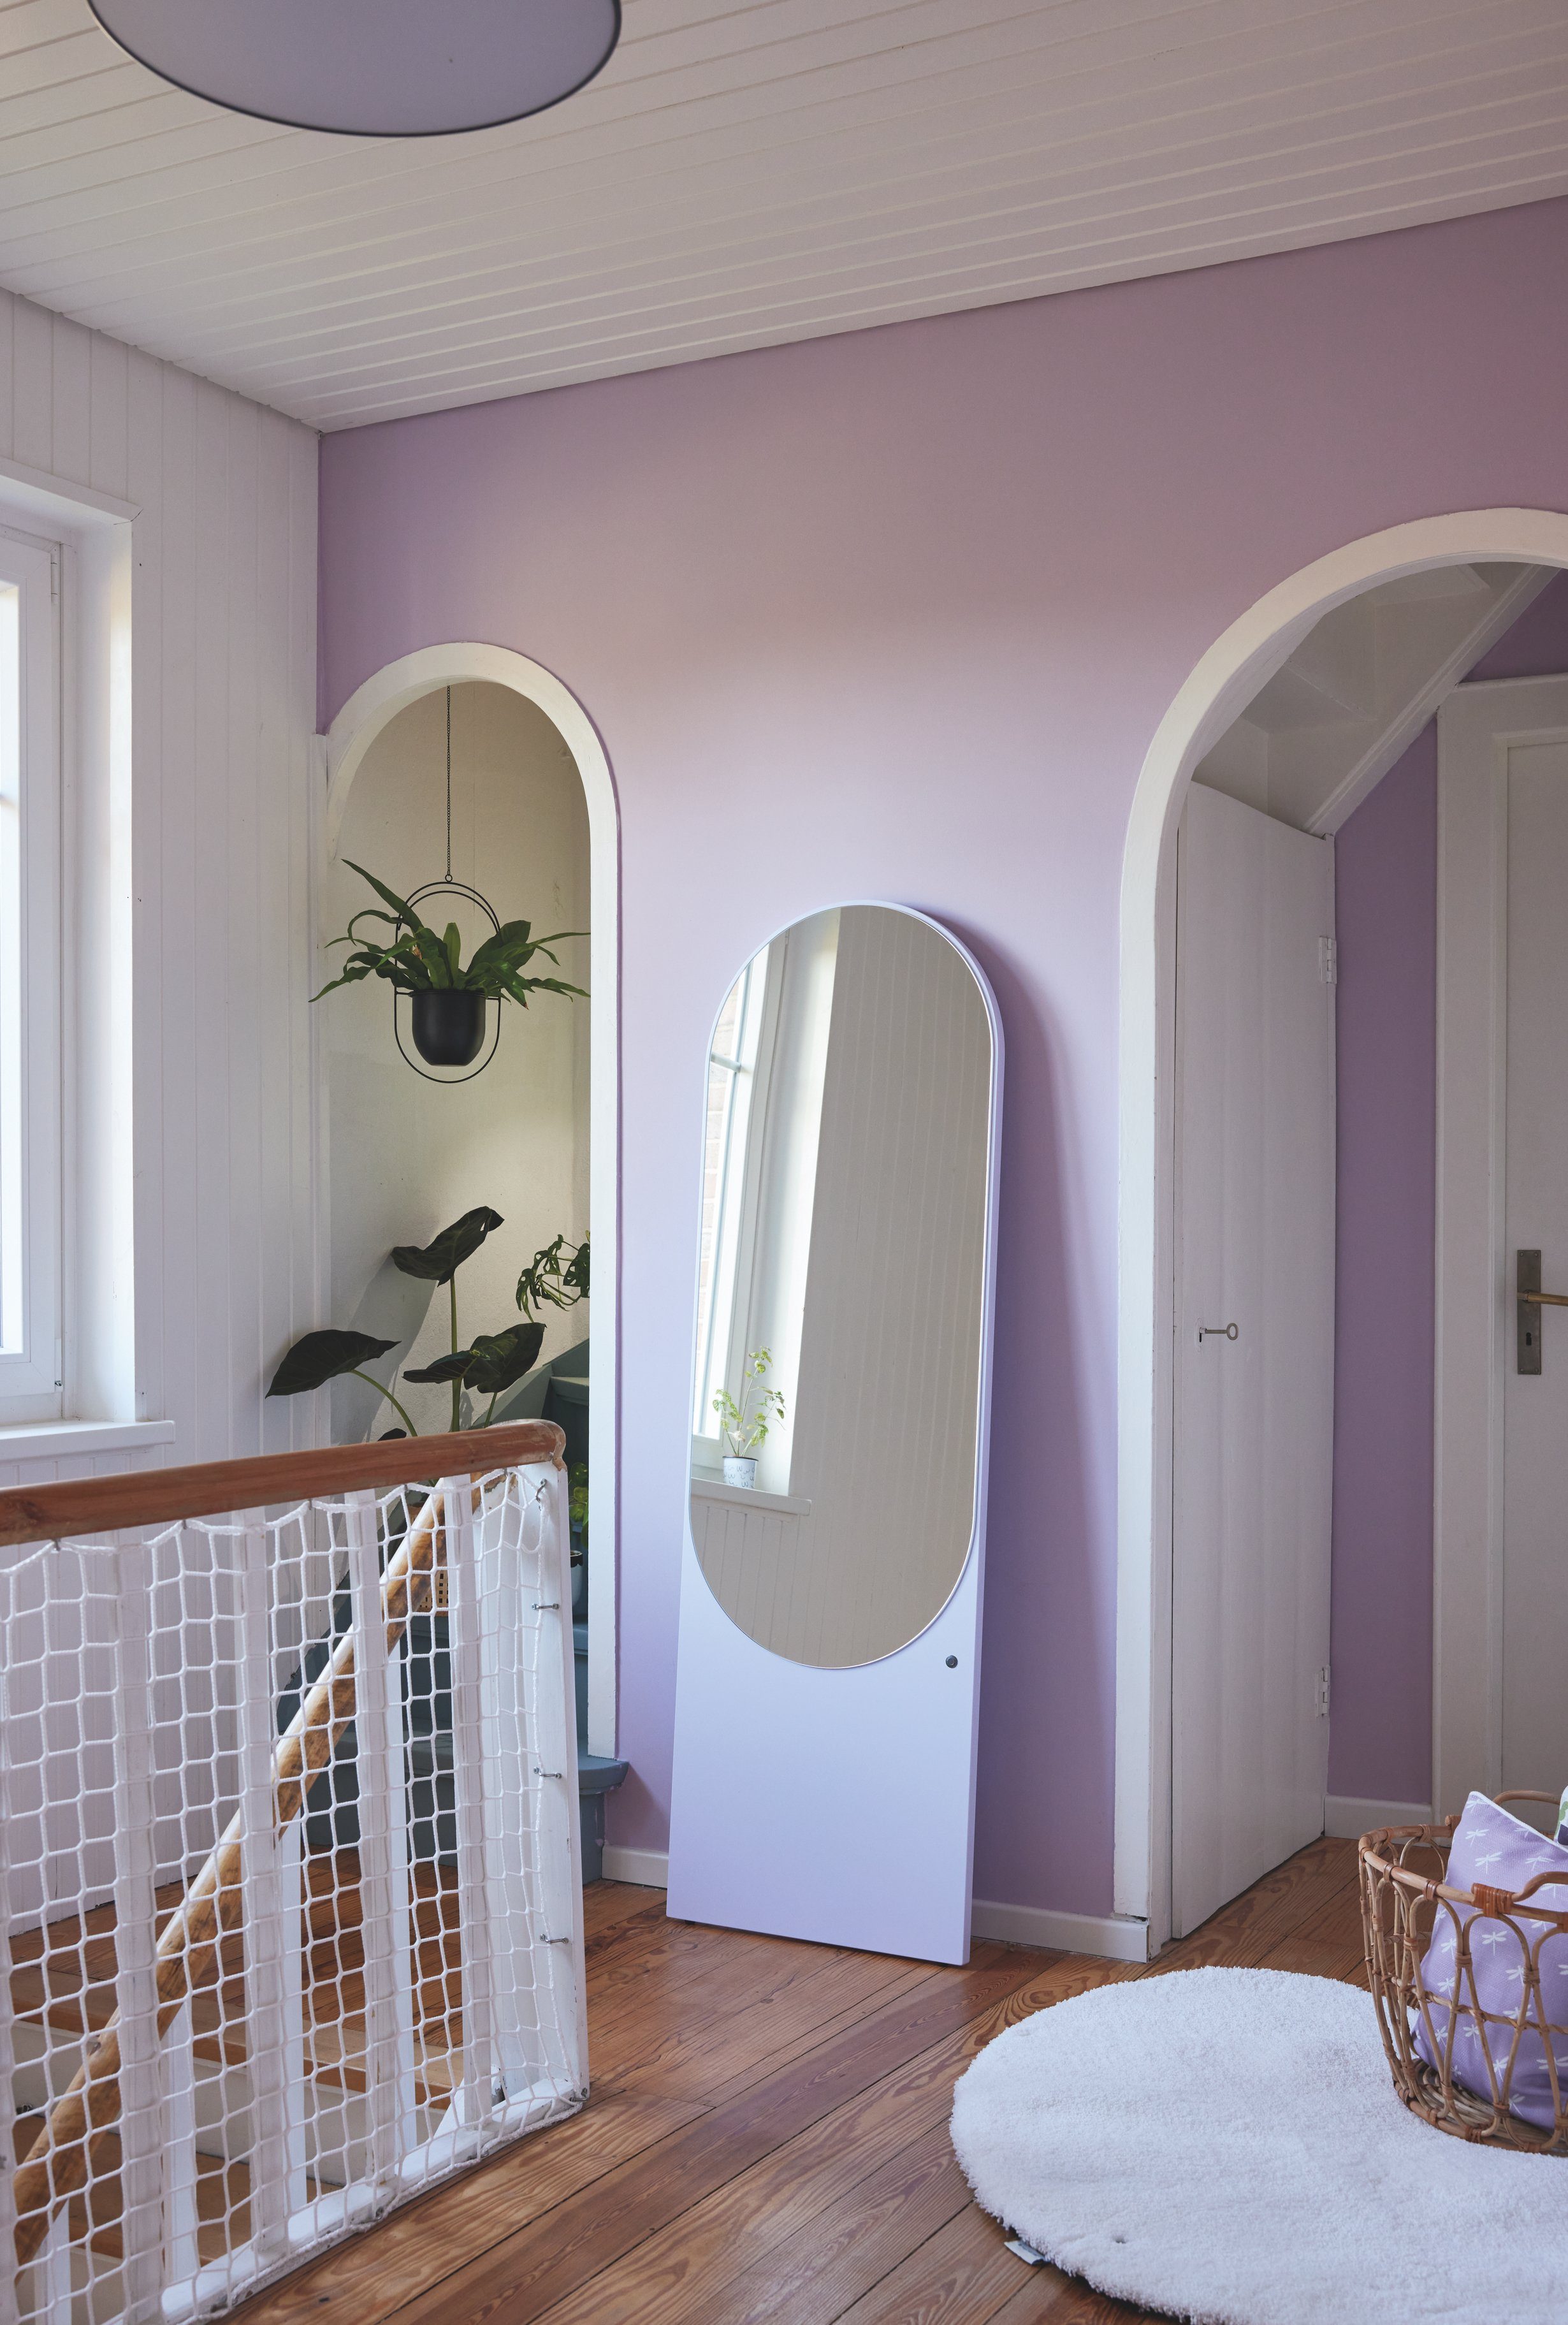 TOM Standspiegel Highlight & Spiegel - Farben vielen in schönen - farbiges Lilac lackiert, Wandlehnender besonderer Form TAILOR MIRROR HOME in COLOR hochwertig